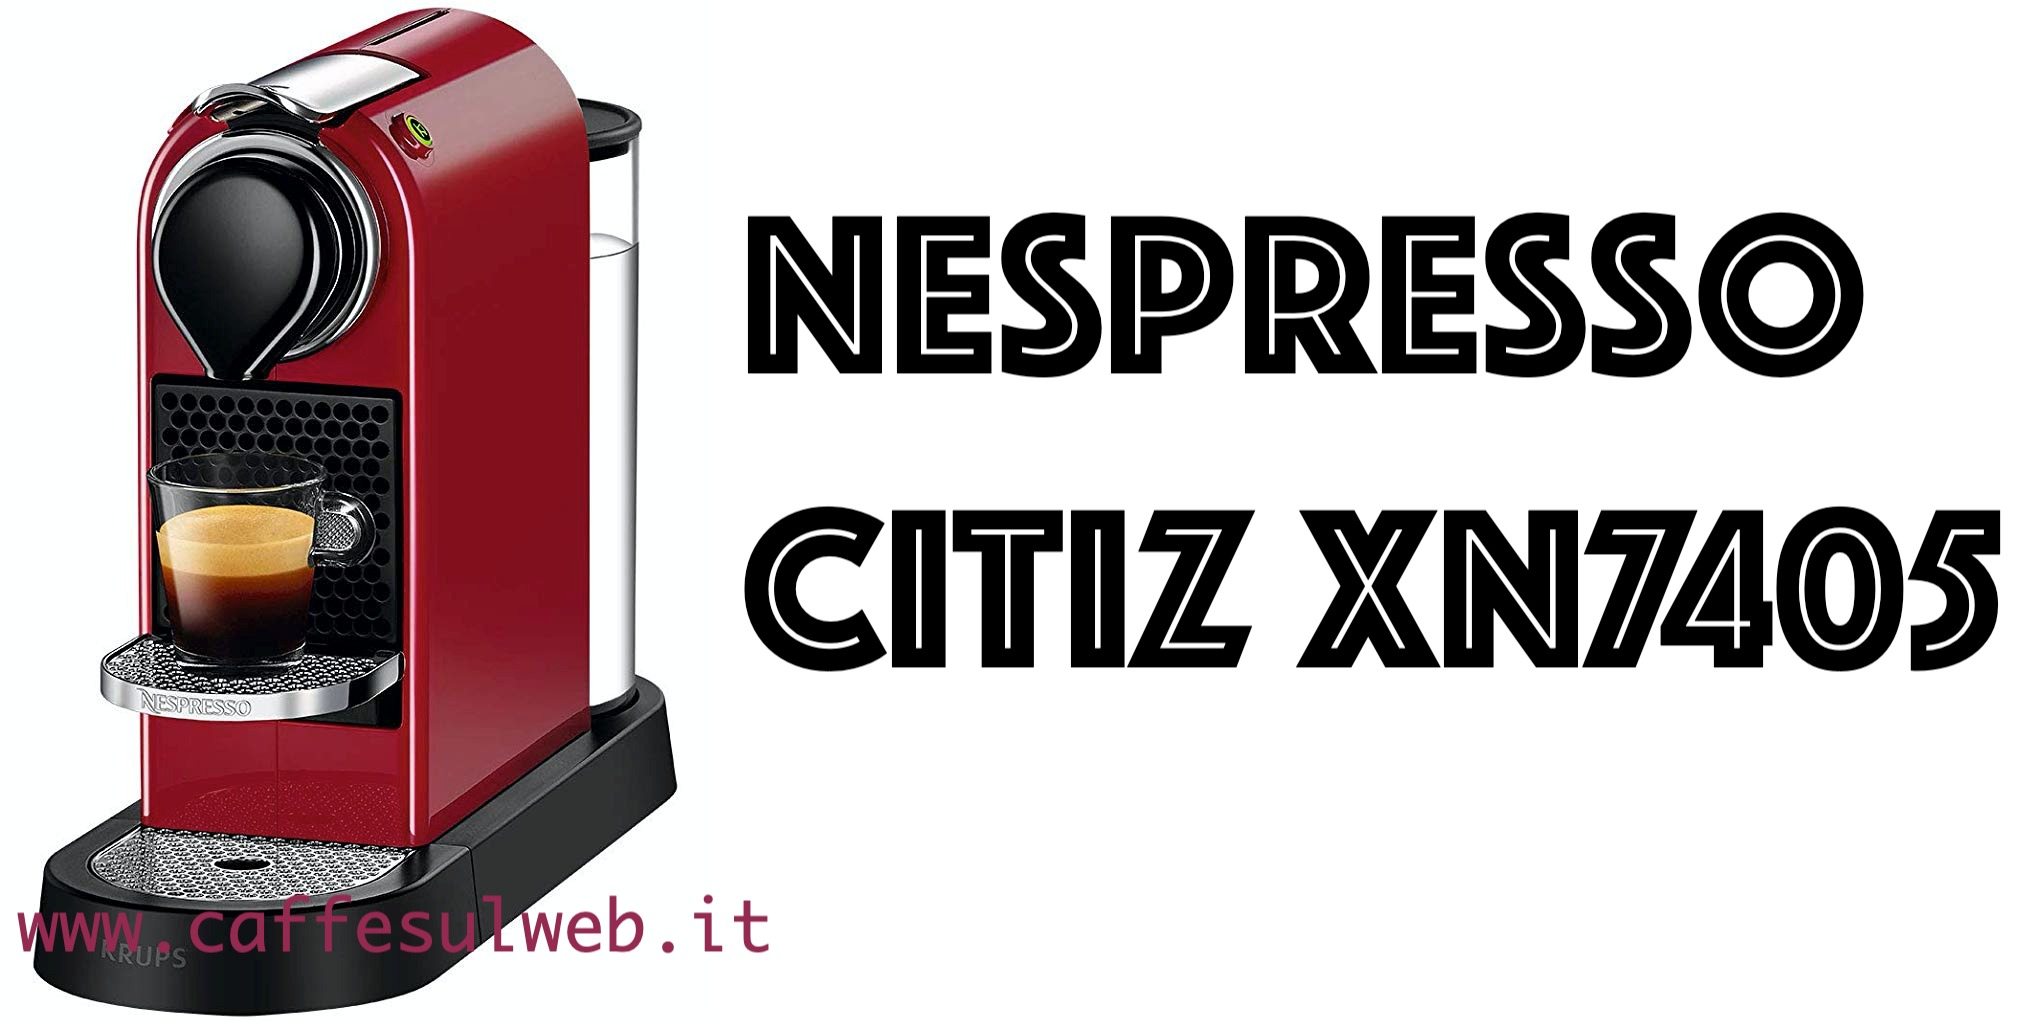 Nespresso Citiz XN7405 Recensioni Opinione Prezzo